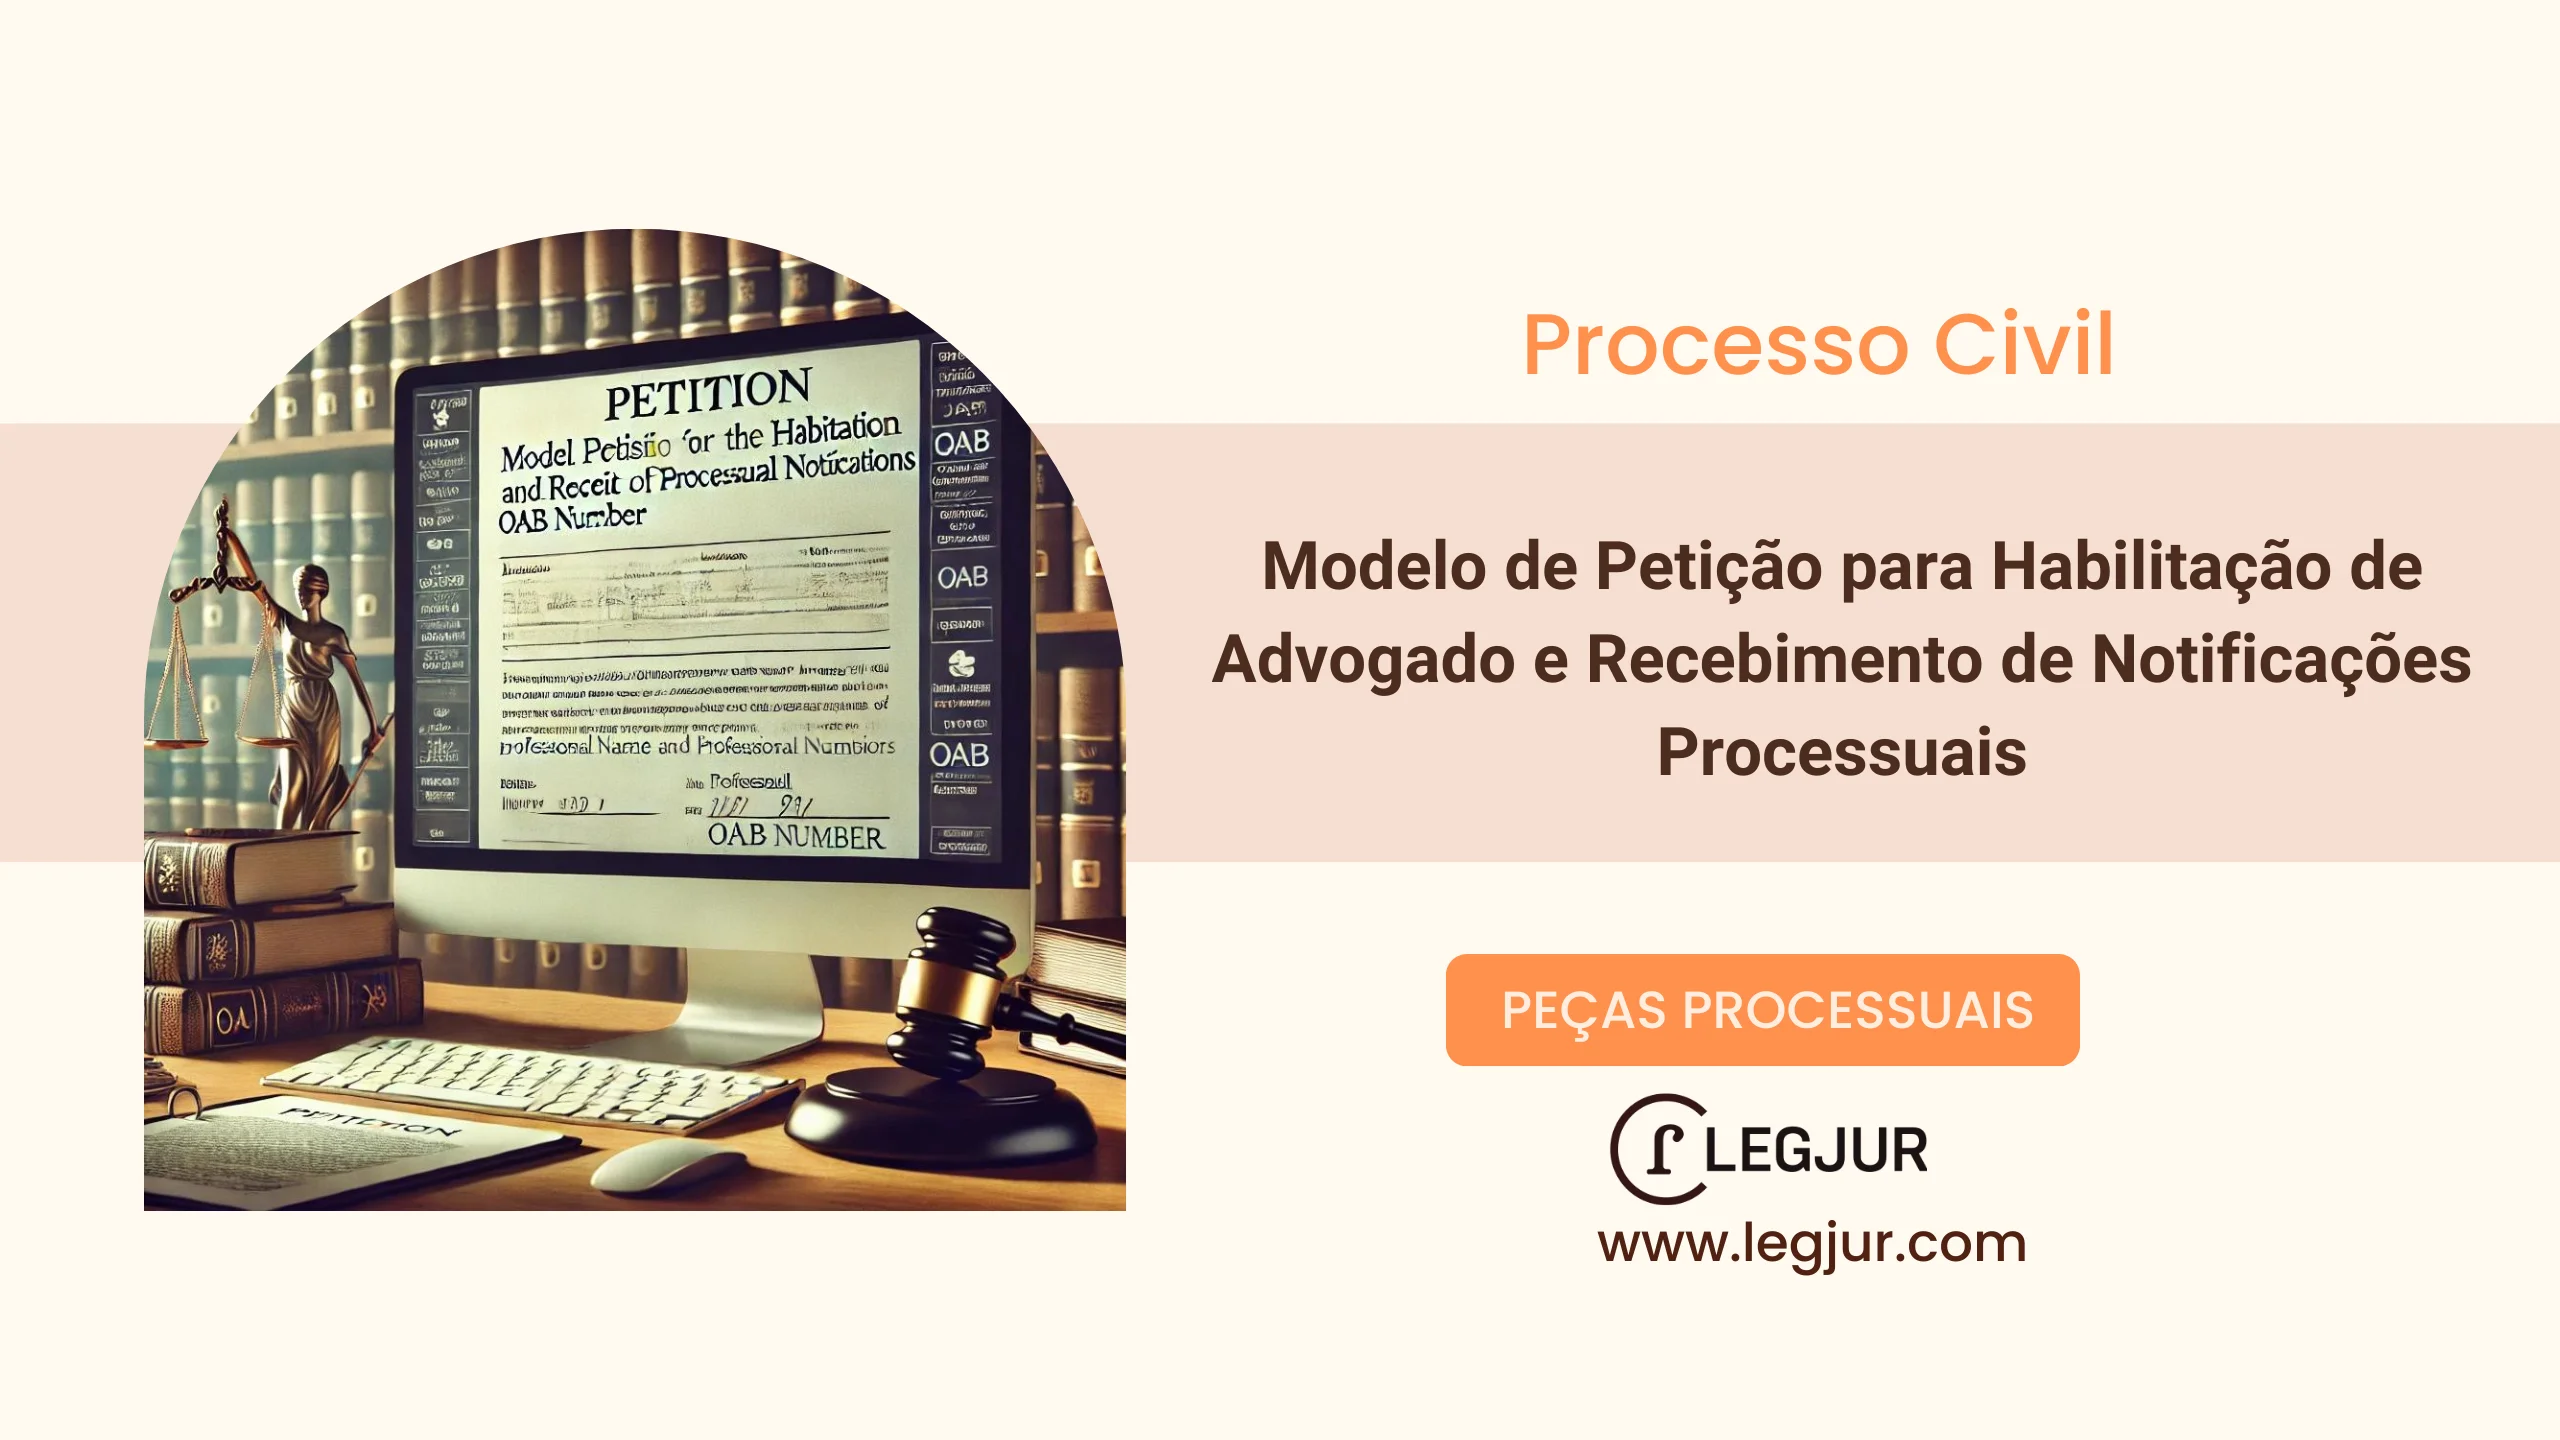 Modelo de Petição para Habilitação de Advogado e Recebimento de Notificações Processuais